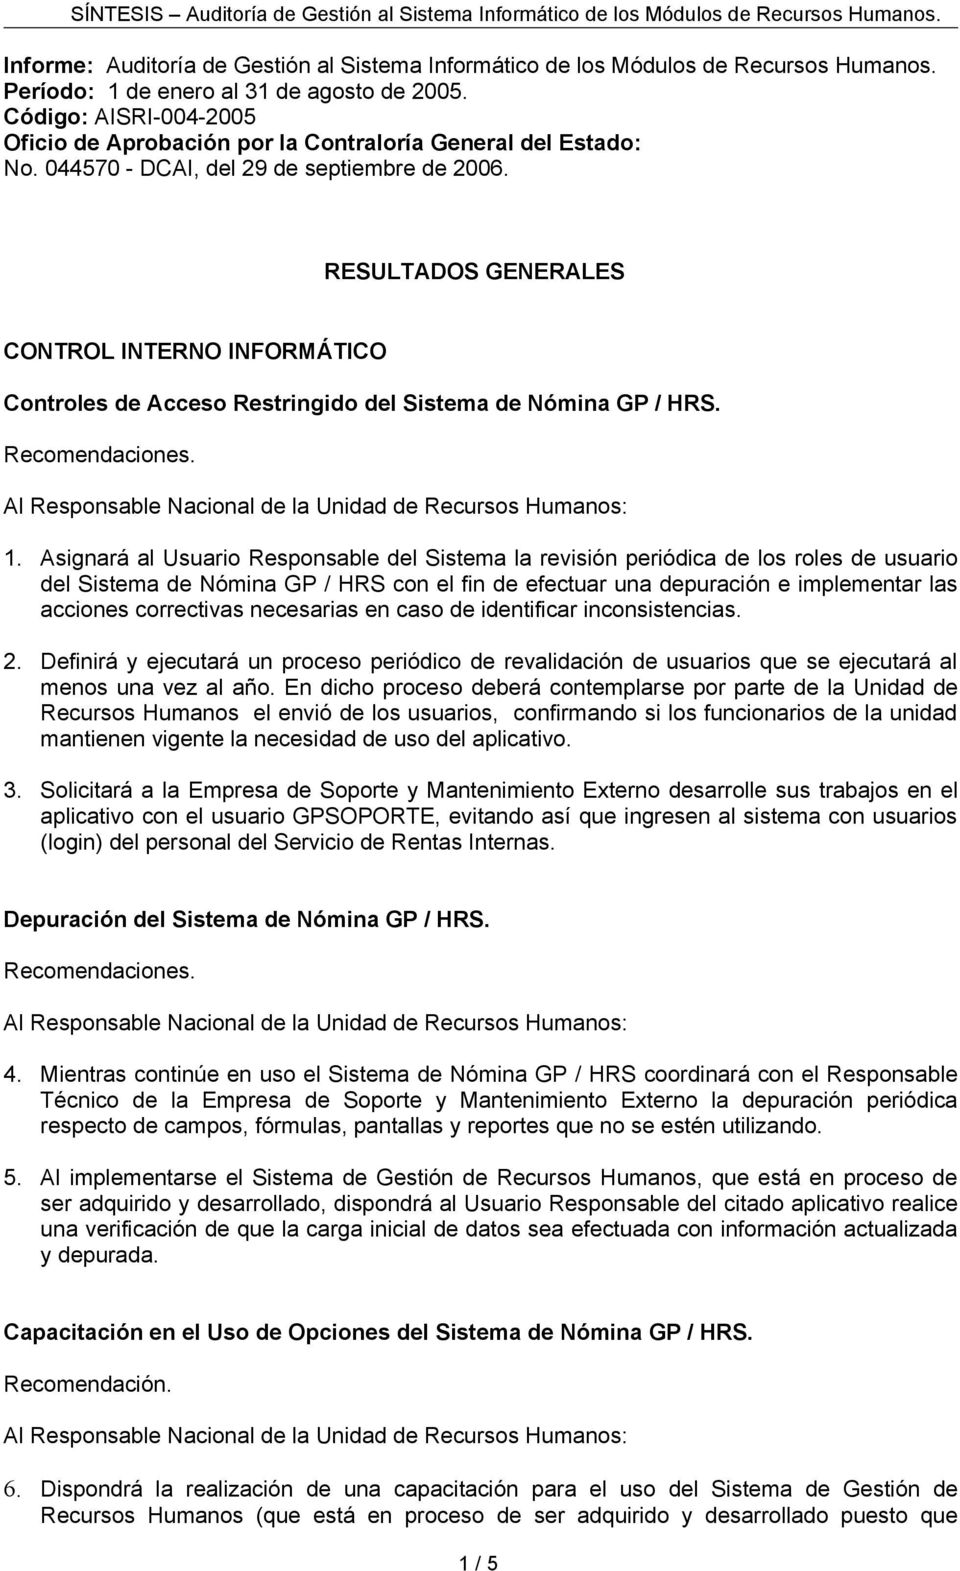 RESULTADOS GENERALES CONTROL INTERNO INFORMÁTICO Controles de Acceso Restringido del Sistema de Nómina GP / HRS. 1.